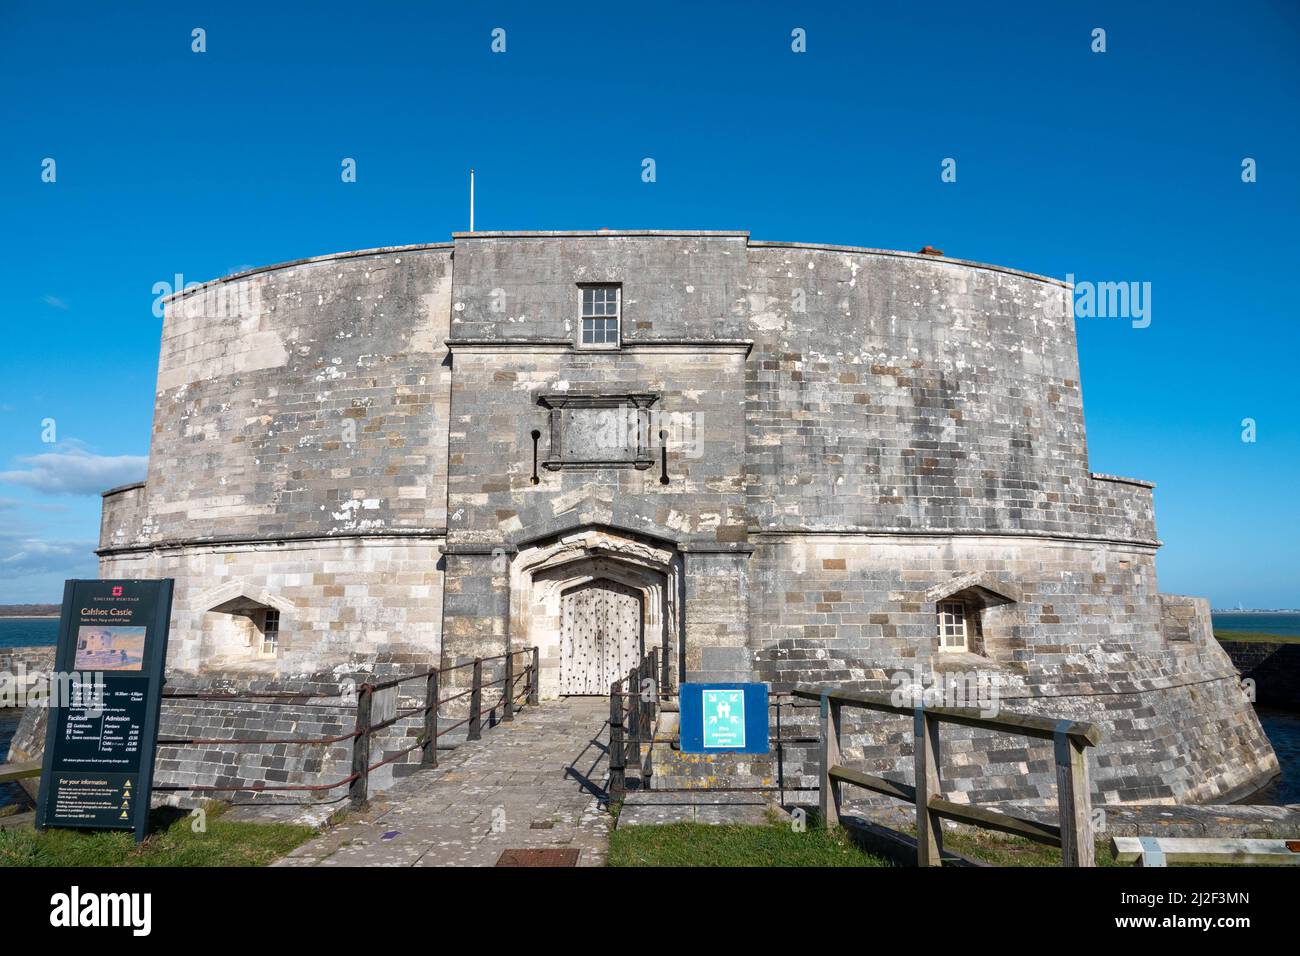 Le château de CalShot est un fort d'artillerie construit par Henry VIII sur le Calshot Spit Hampshire Angleterre Banque D'Images